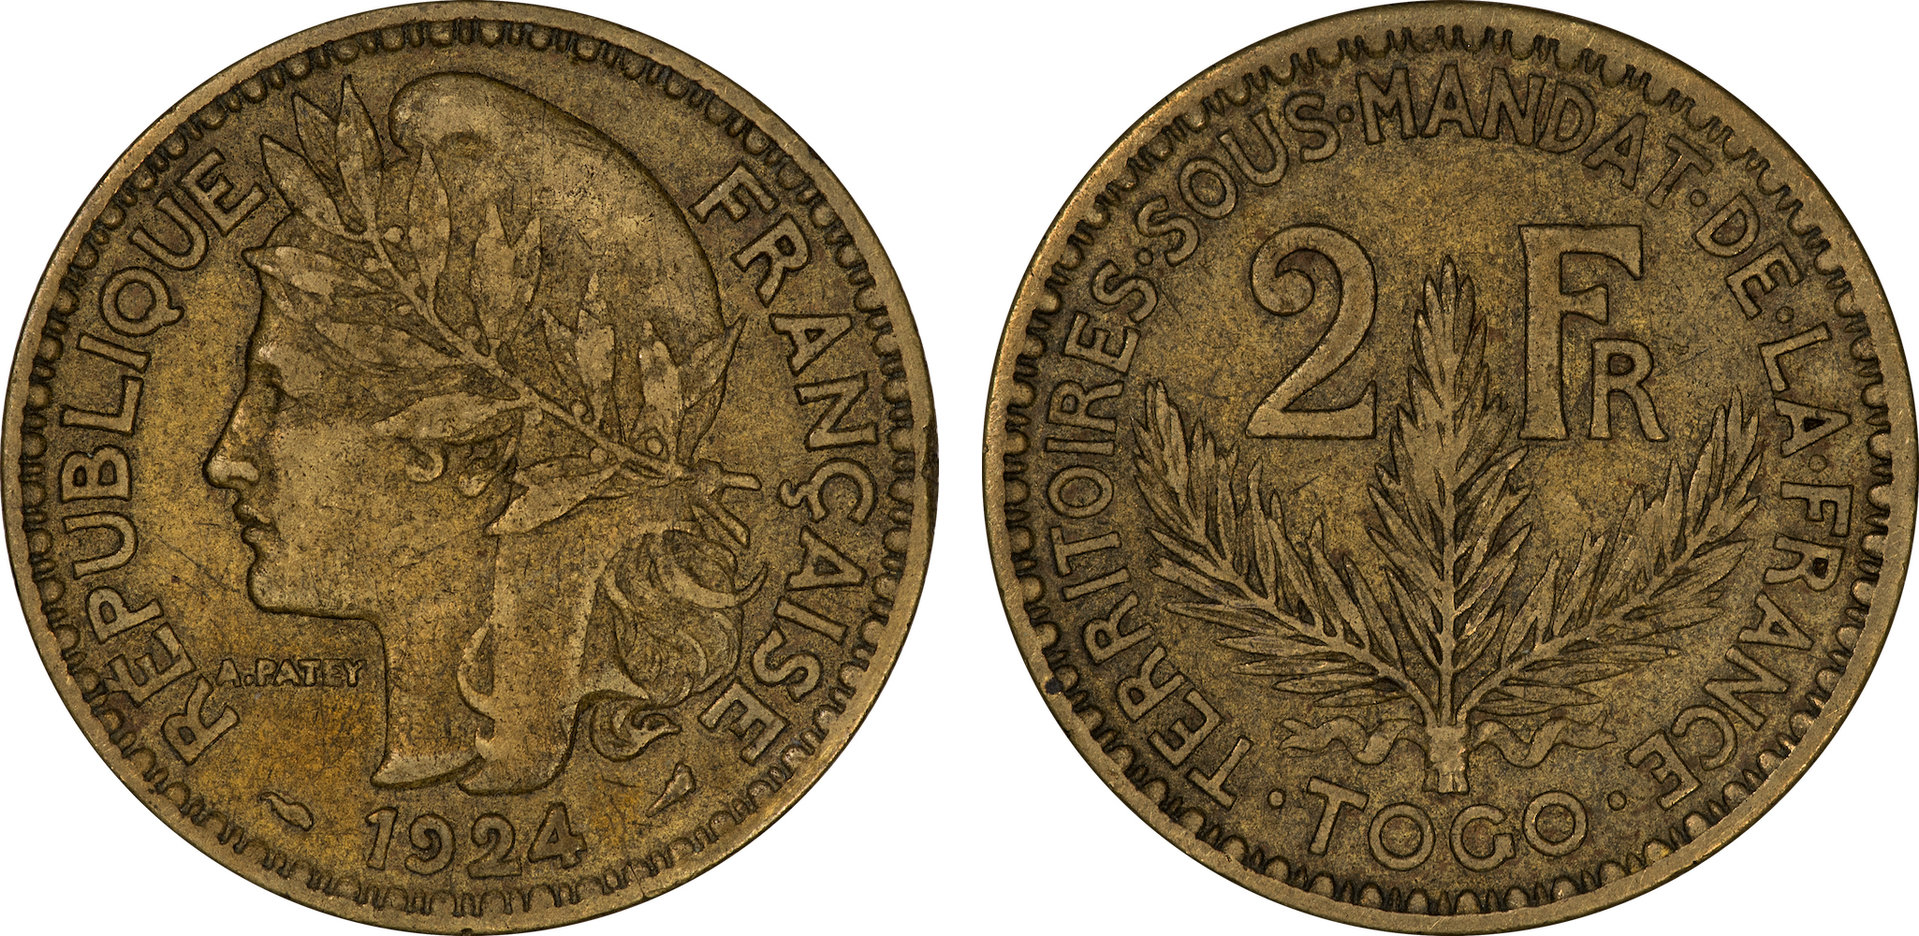 Togo - 1924 2 Francs 1.jpg